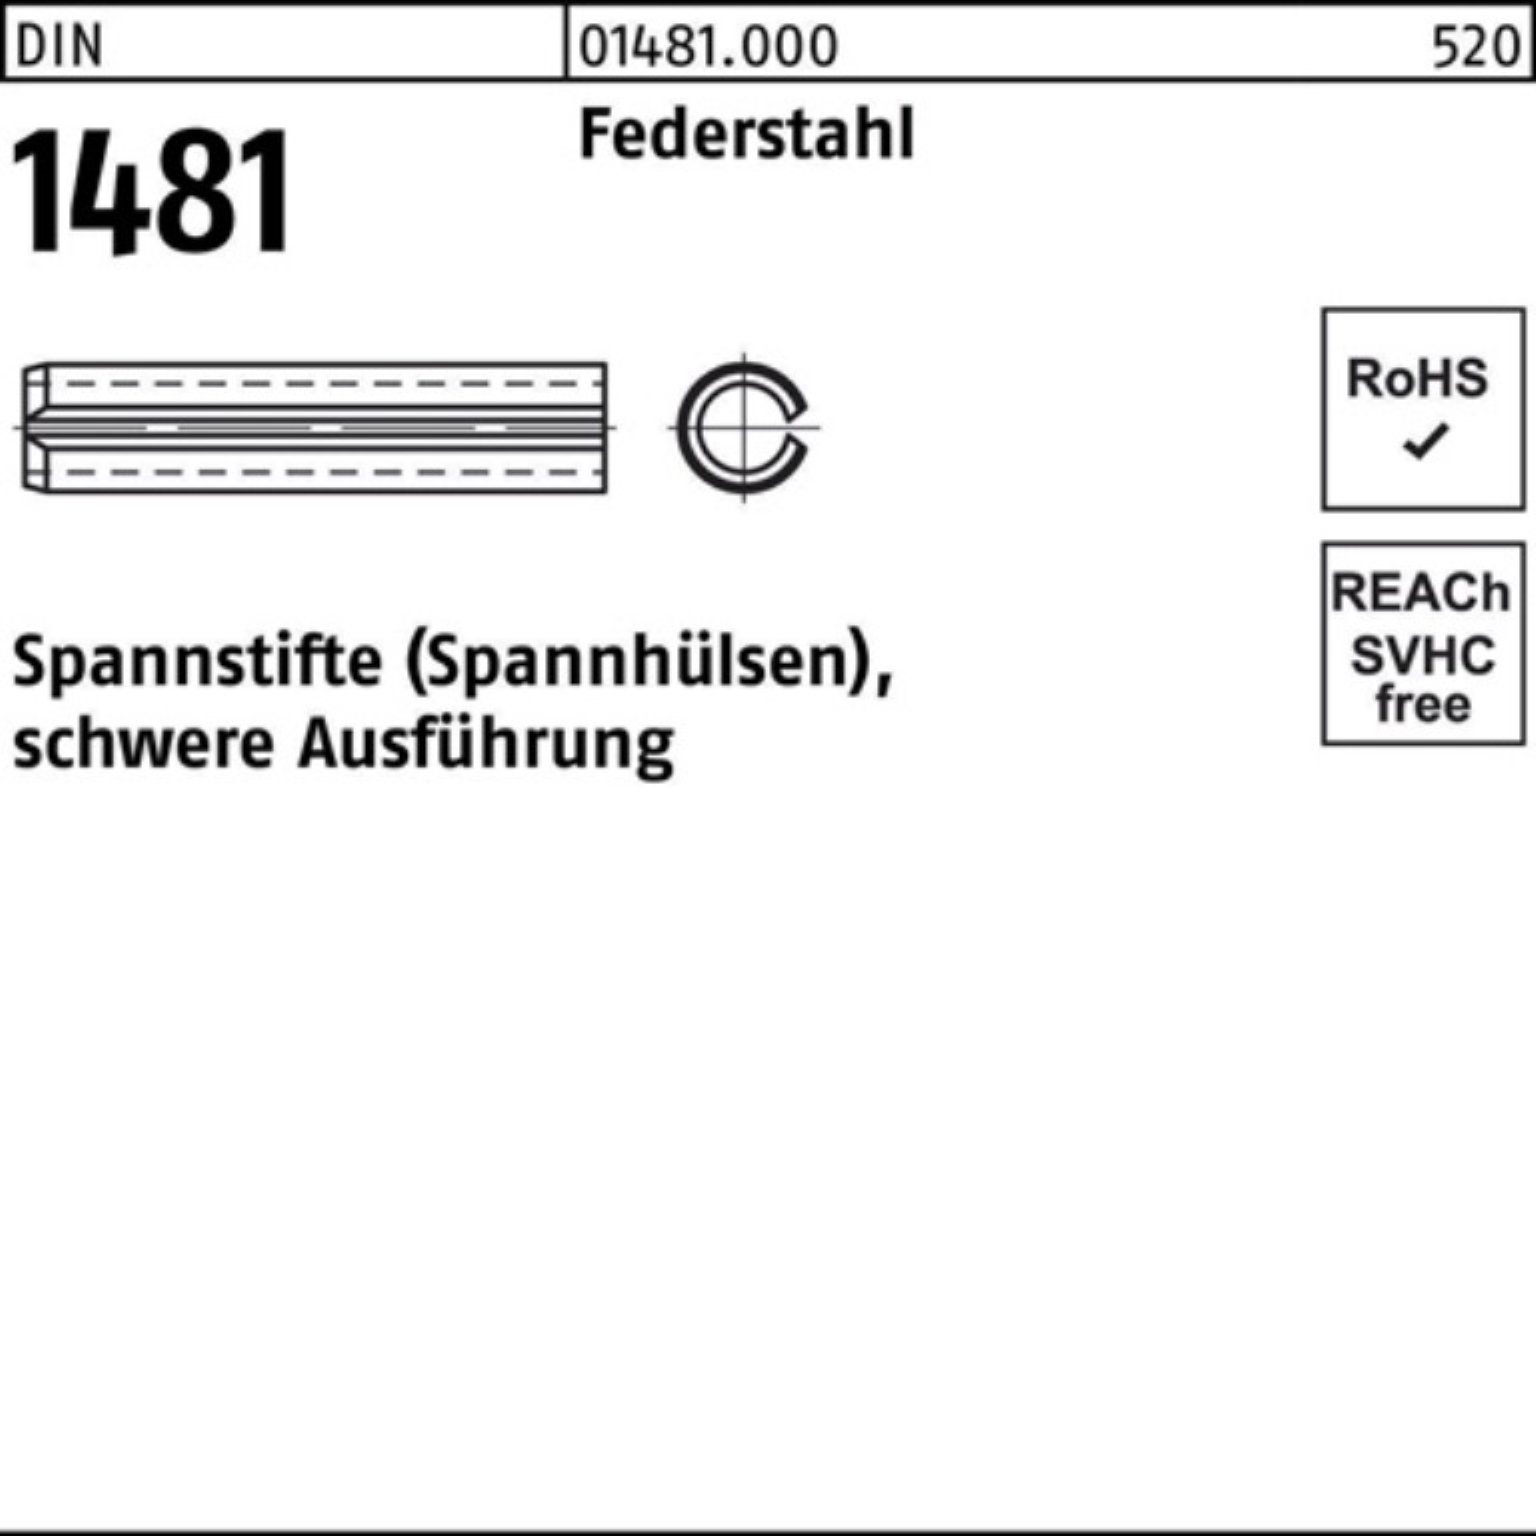 Reyher Spannstift 100er 2 14x Ausführung schwere Federstahl 1481 Pack 60 Spannstift DIN